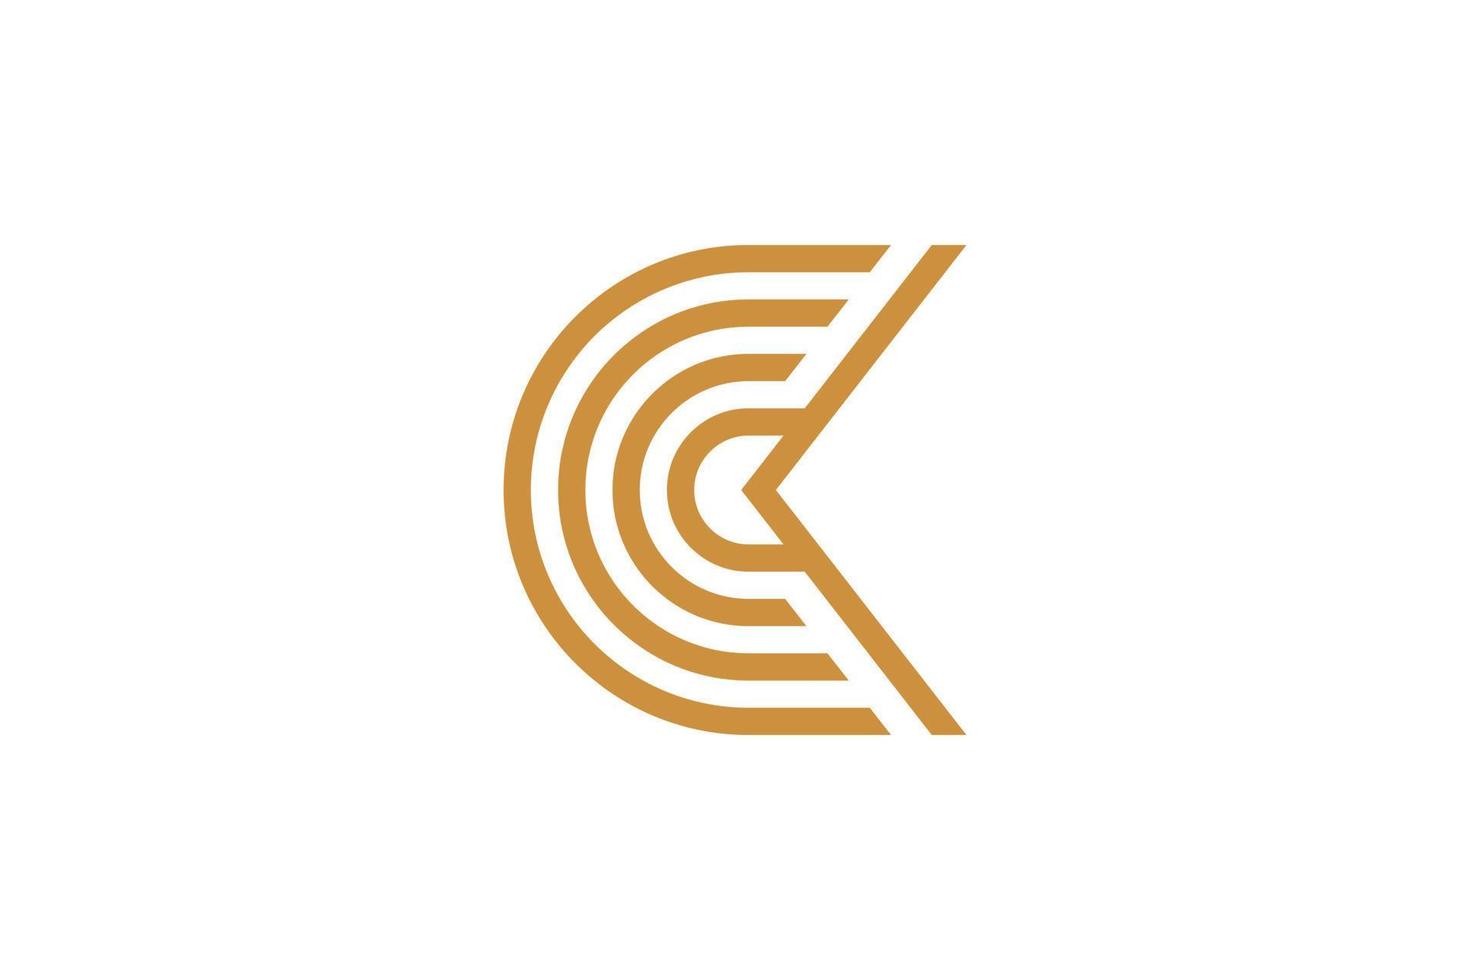 la lettre c logo monoline vecteur